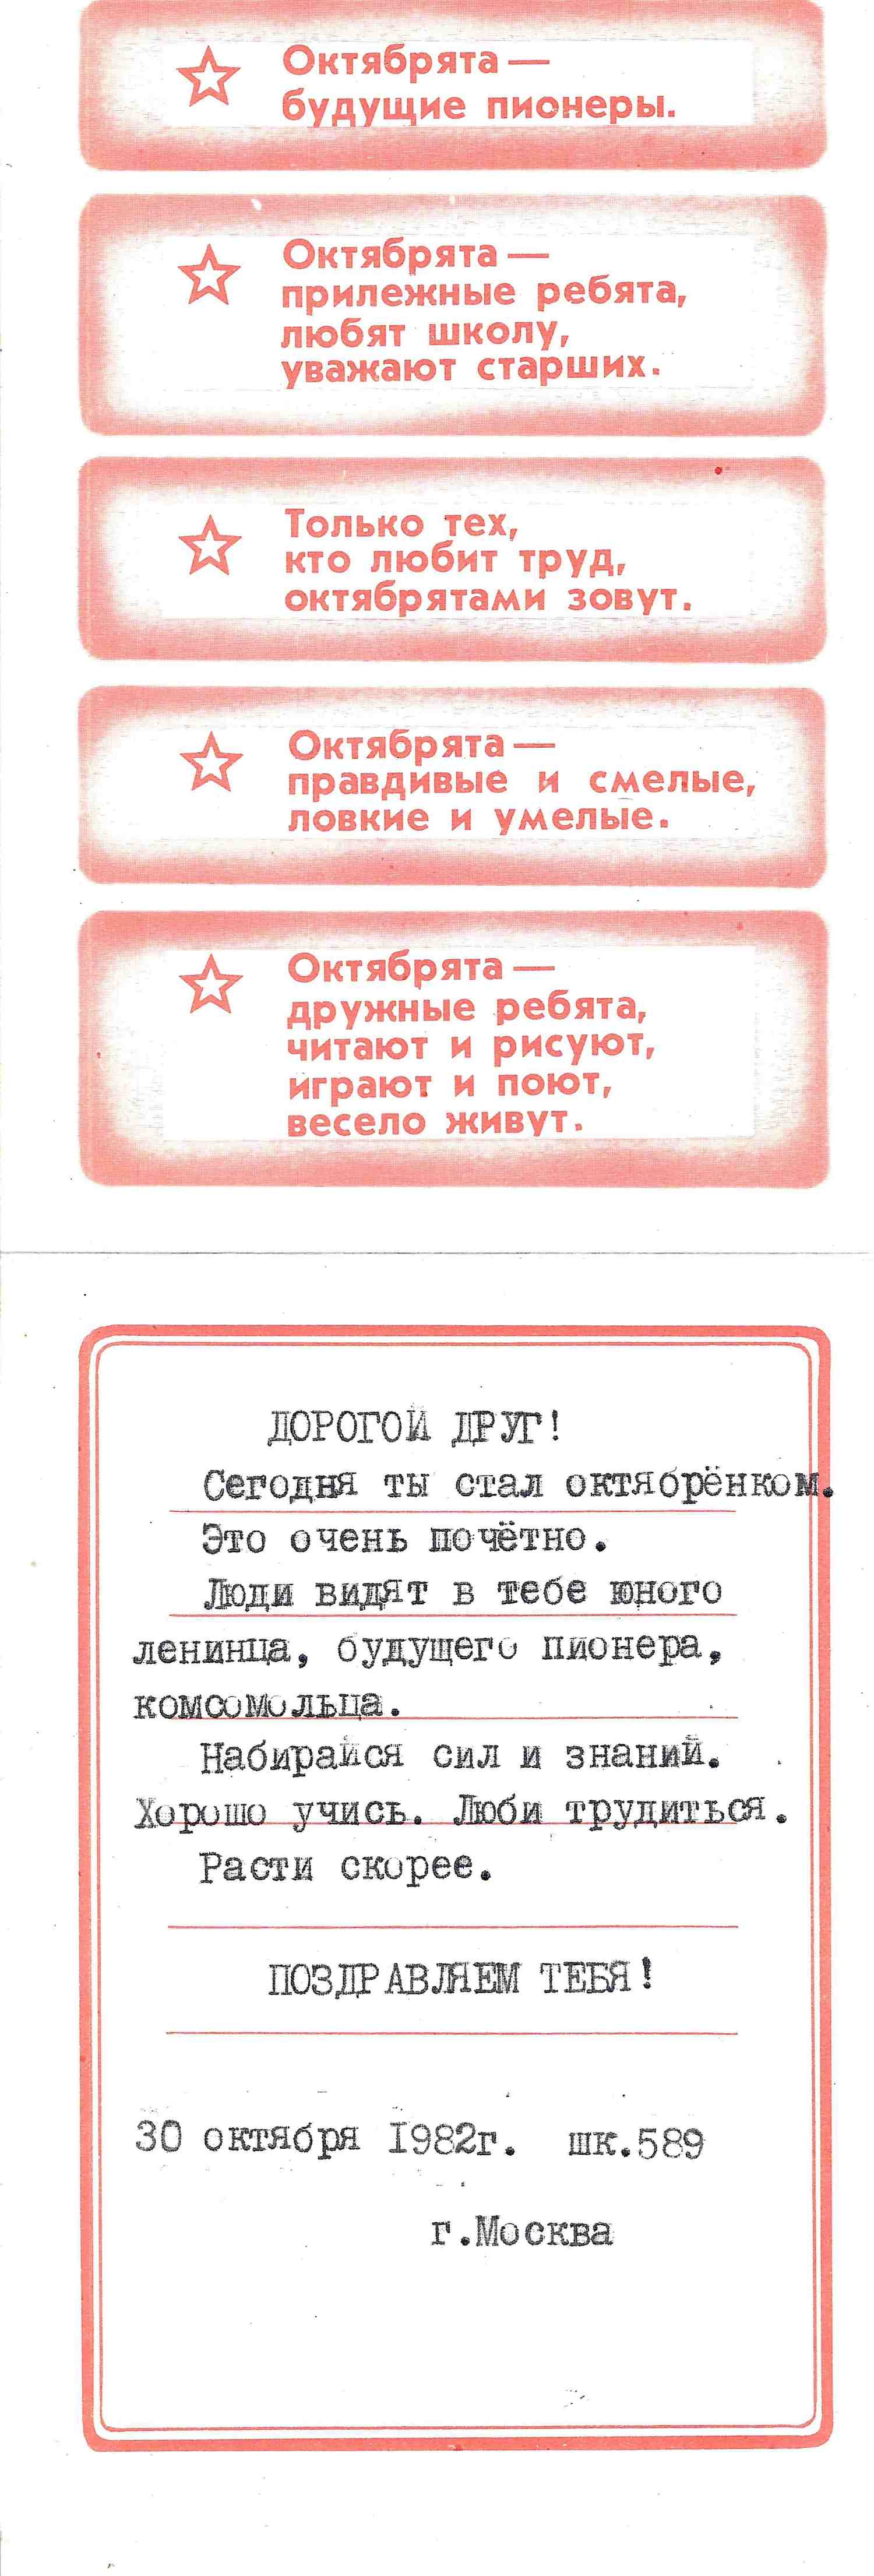 Ермаков В. Бланк поздравления в день принятия в октябрята. Заполнен 30 октября 1982 года для учеников московской школы №589.